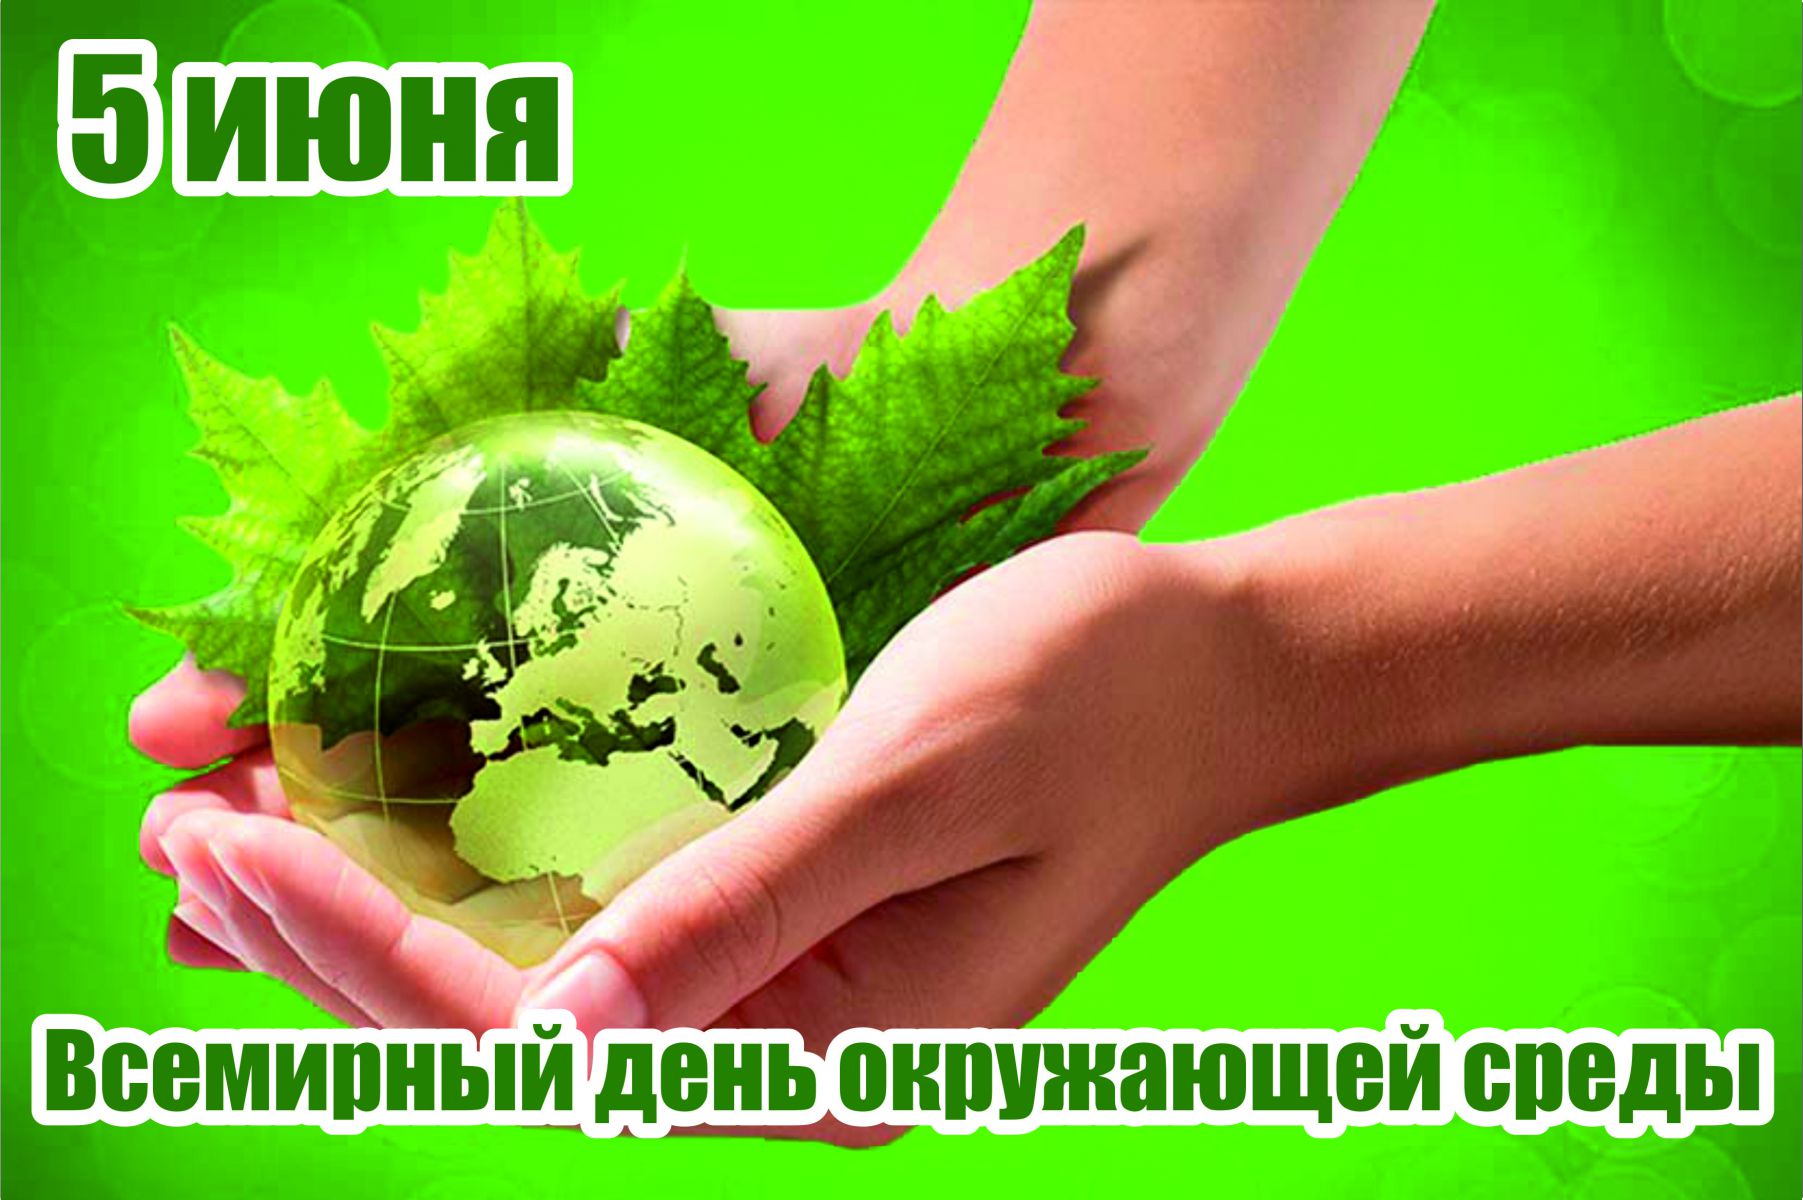 5 Июня день эколога Всемирный день охраны окружающей среды